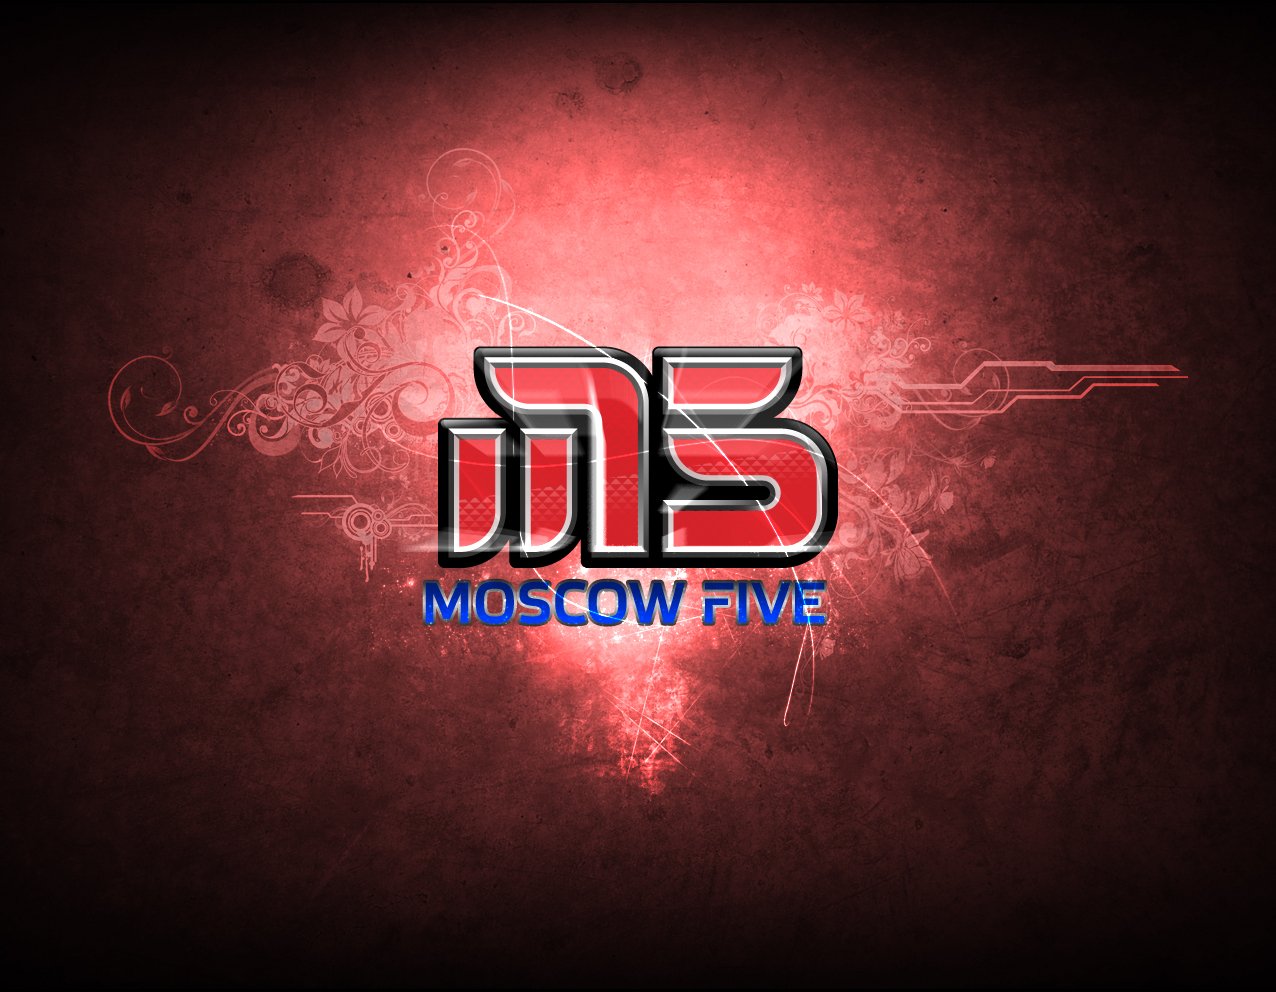 Файв москва. Москов Файв КС 1.6. Moscow Five. Moscow Five CS 1.6. Moscow Five аватарка.